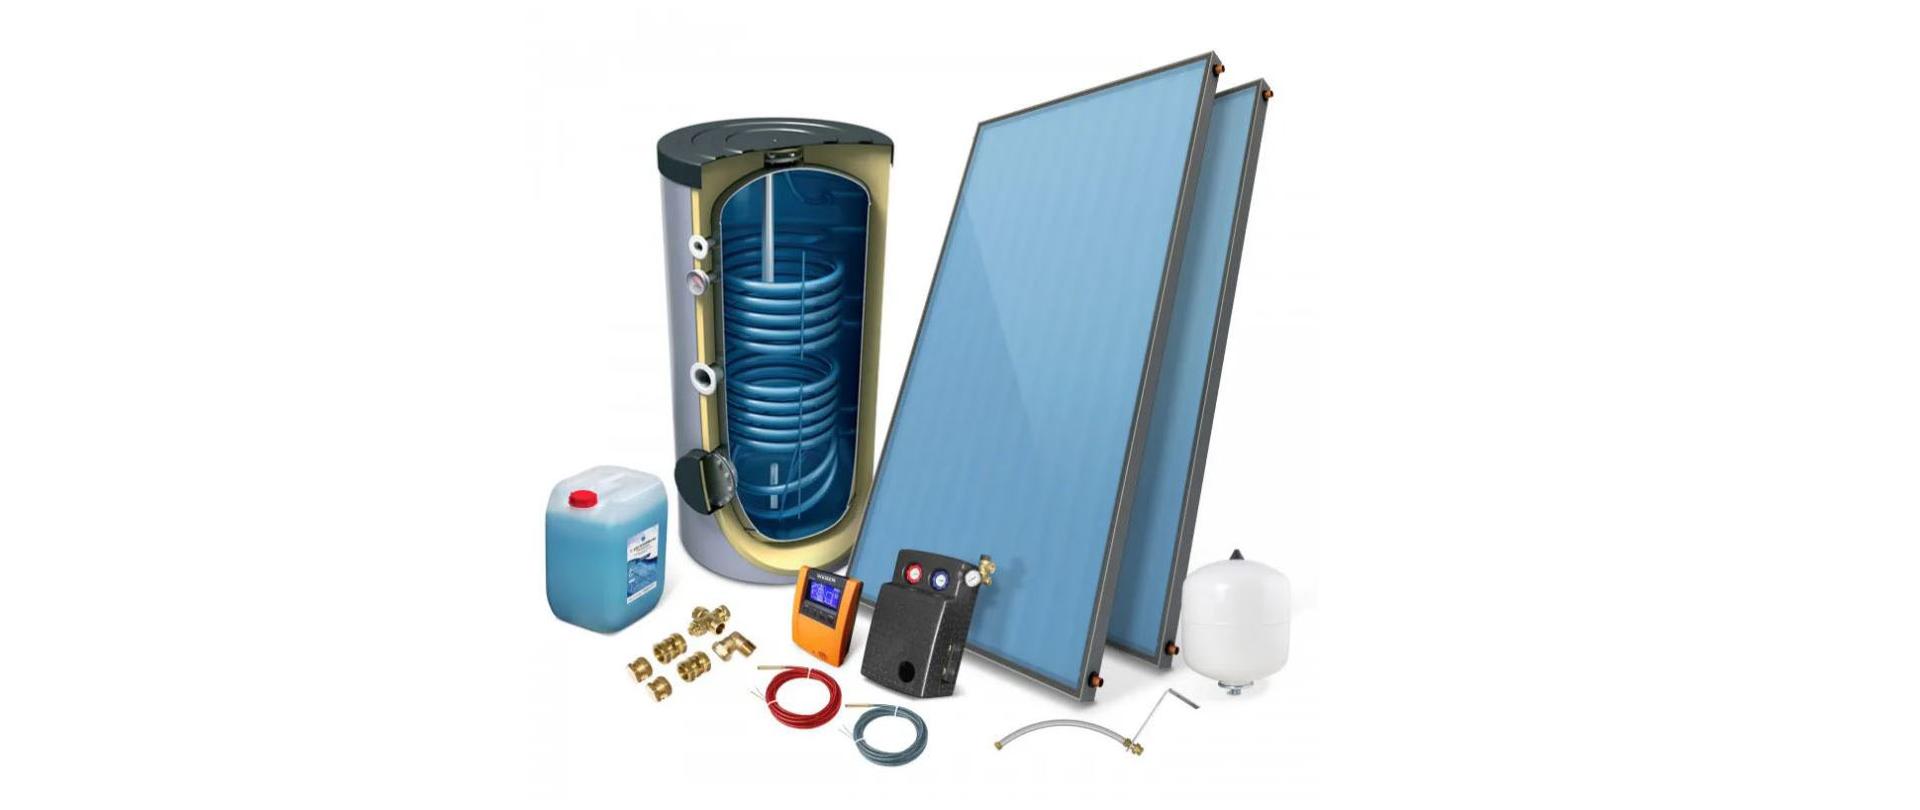 Zdjęcie przedstawia elementy instalacji solarnej: zasobnik wody, zestaw pompowy ze sterownikiem, panele solarne, zbiornik wyrównawczy, oraz zbiornik z płynem grzewczym